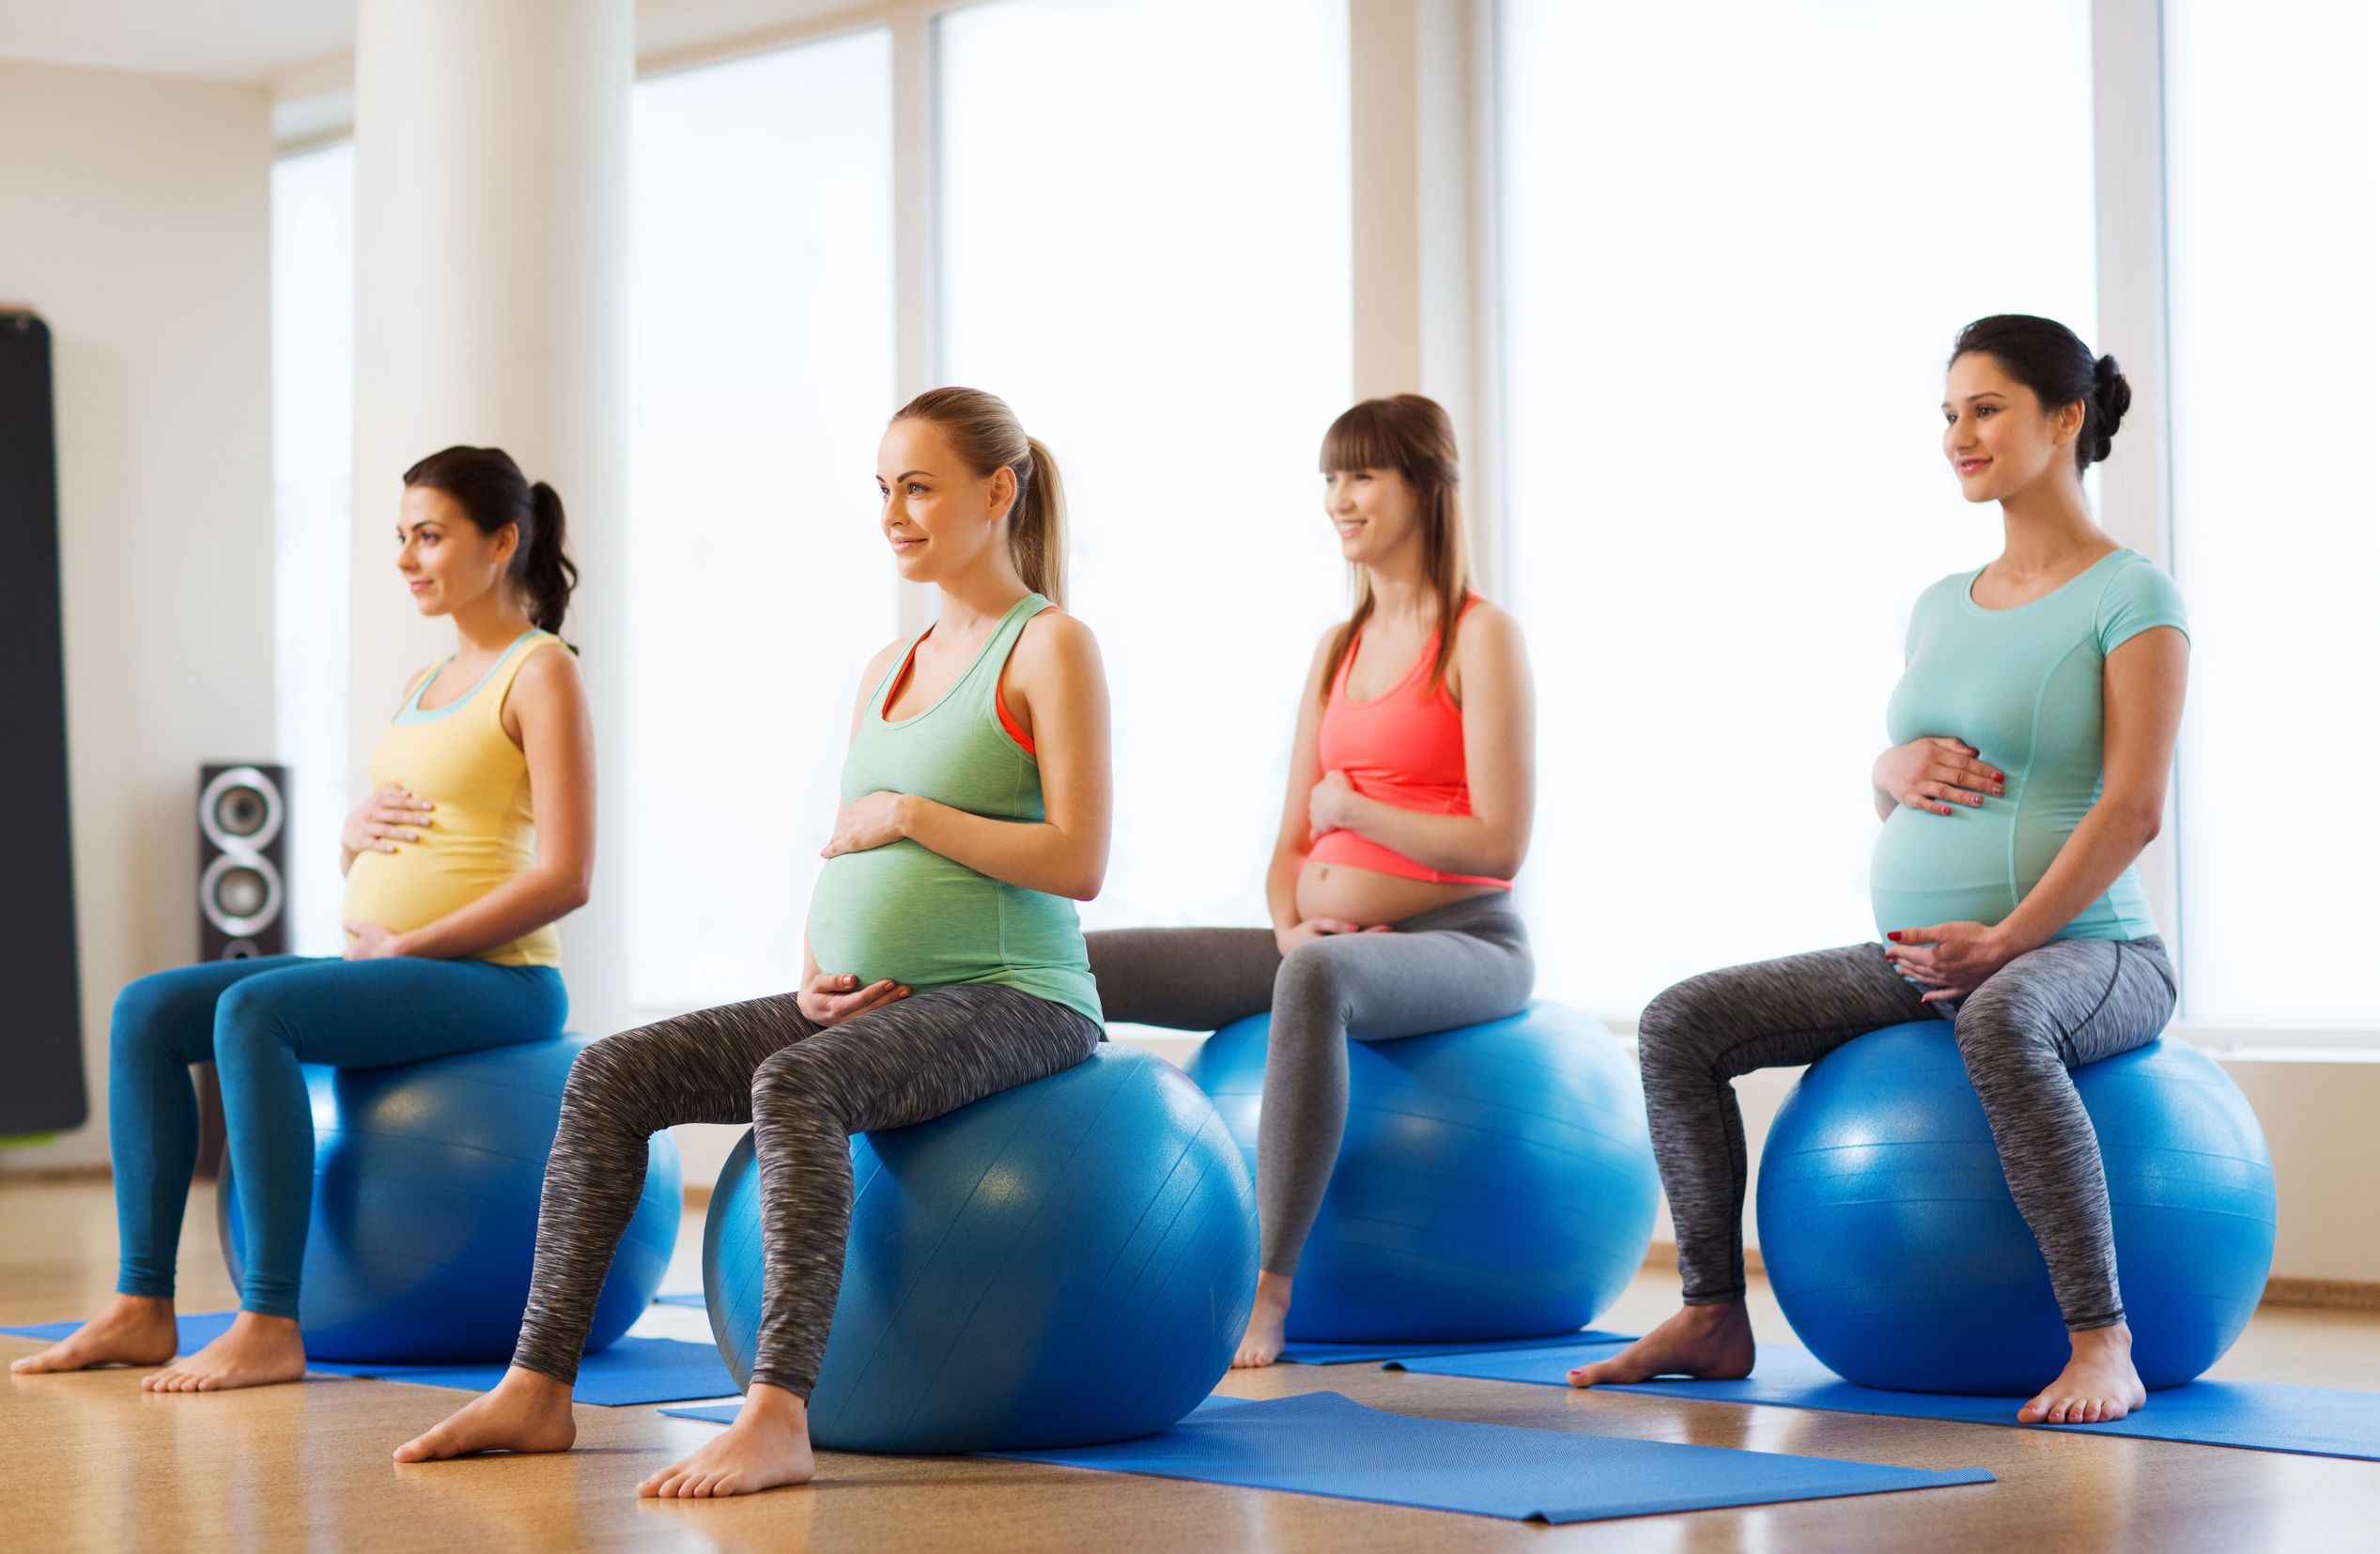 Happy pregnant women exercising